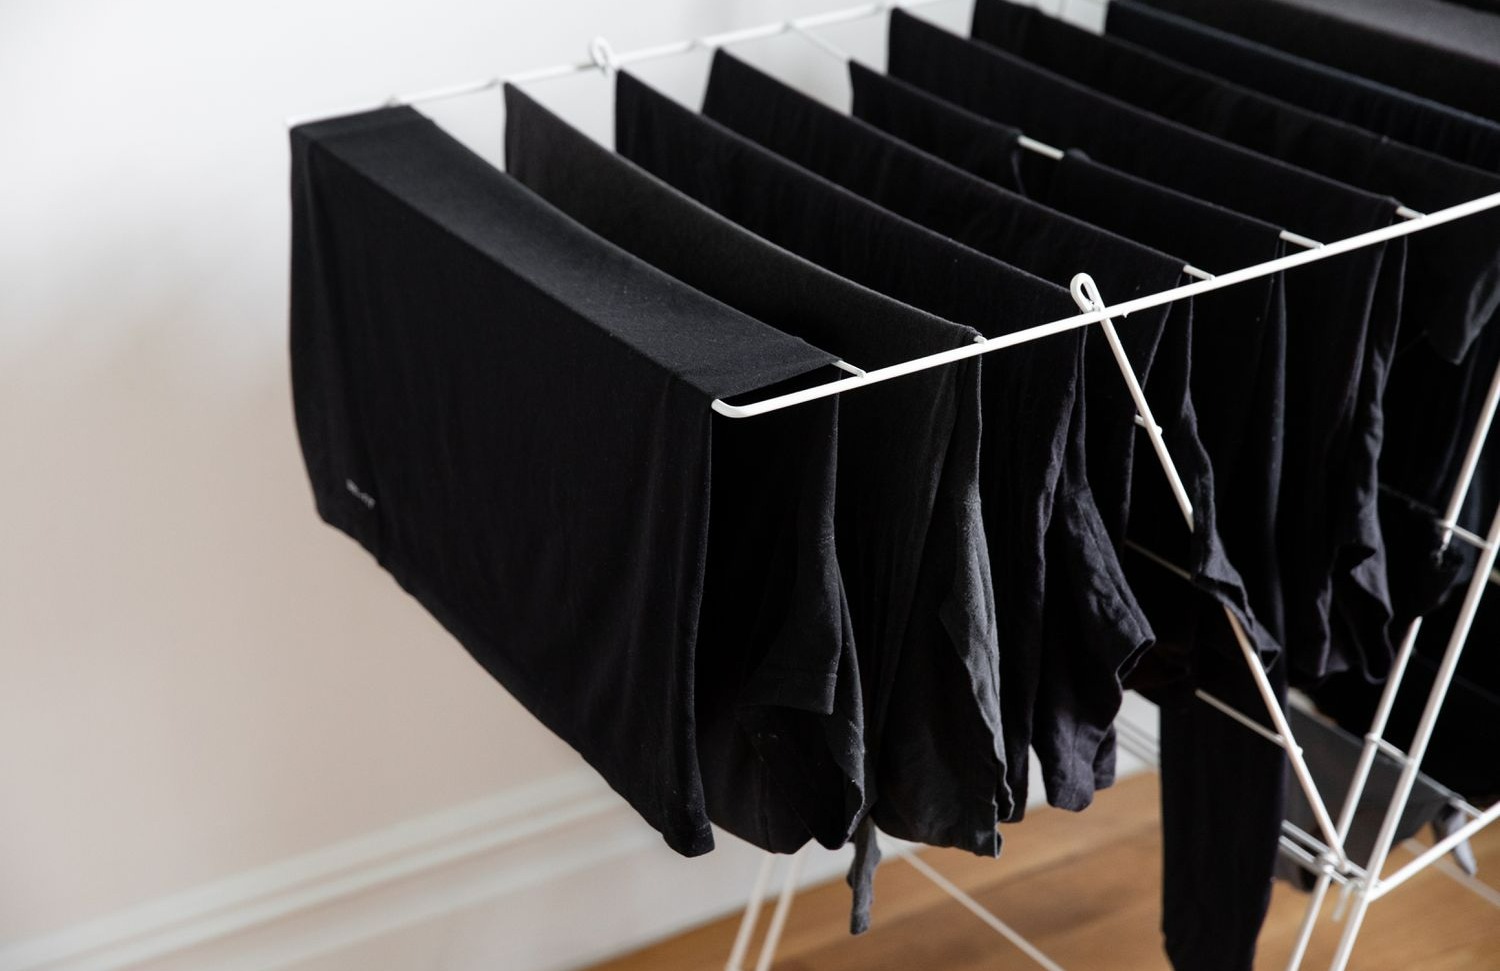 لباس های مشکی در رخت اویز - جلوگیری از بور شدن لباس مشکی